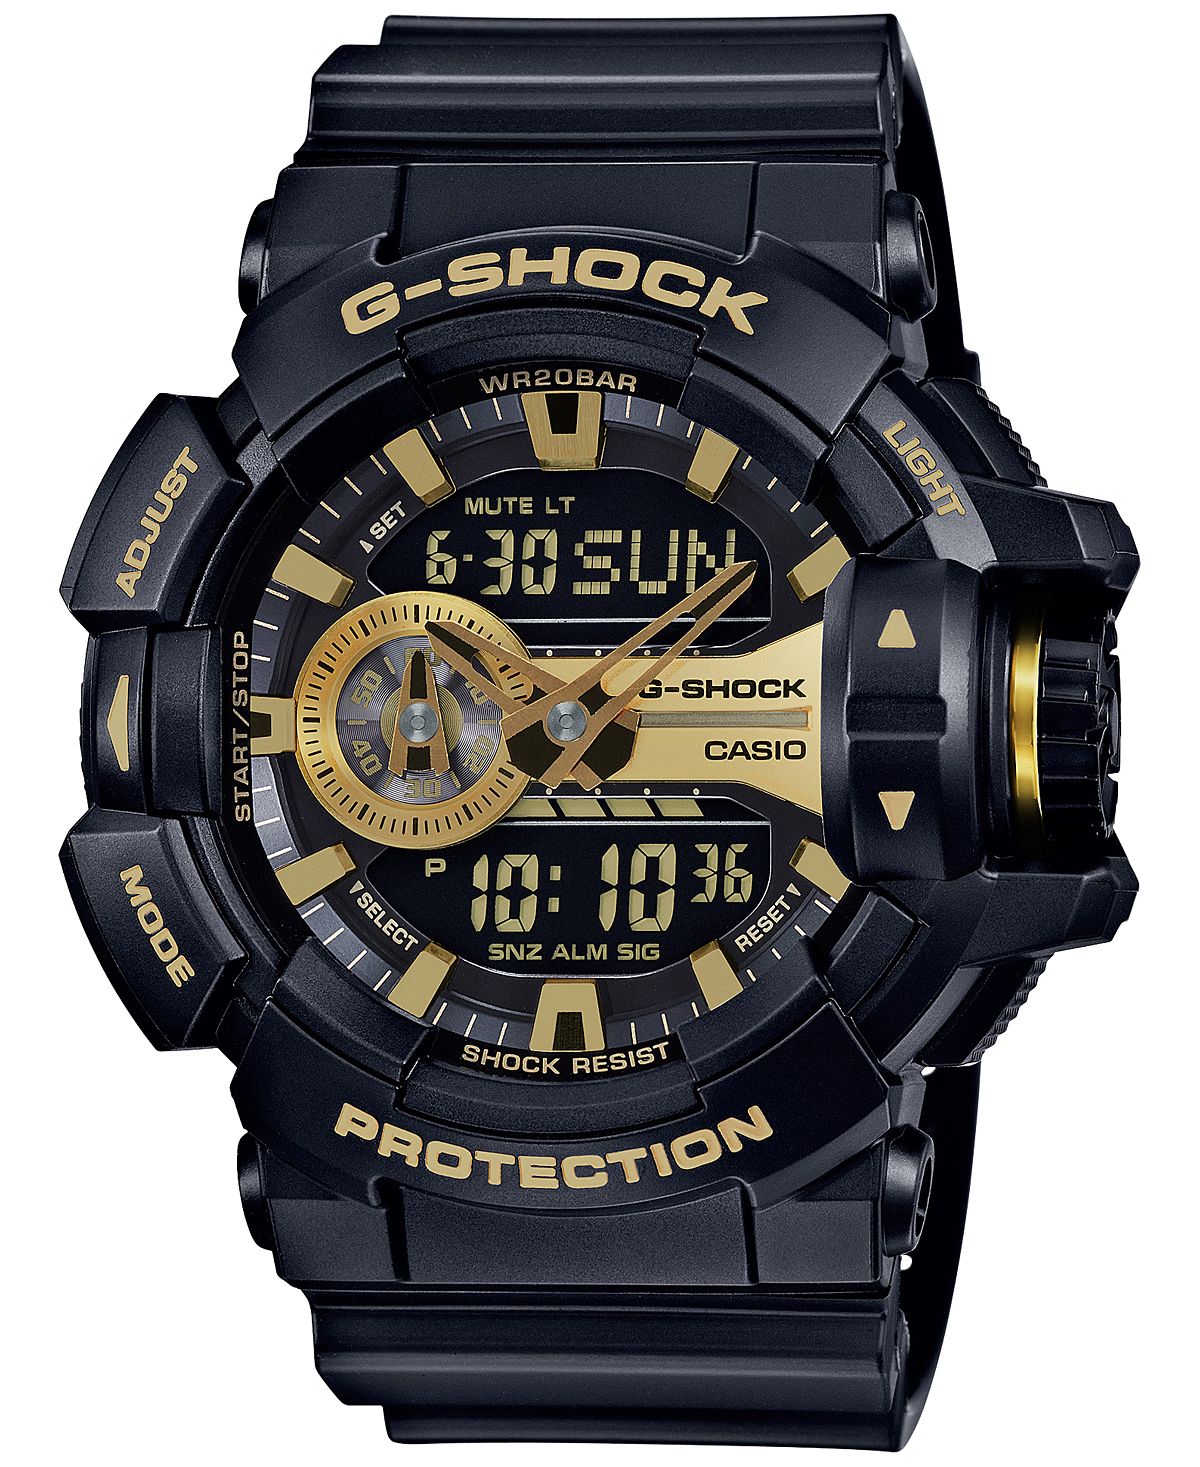 Мужские аналогово-цифровые часы с хронографом, черный полимерный ремешок, 55x52 мм GA400GB-1A9 G-Shock цена и фото